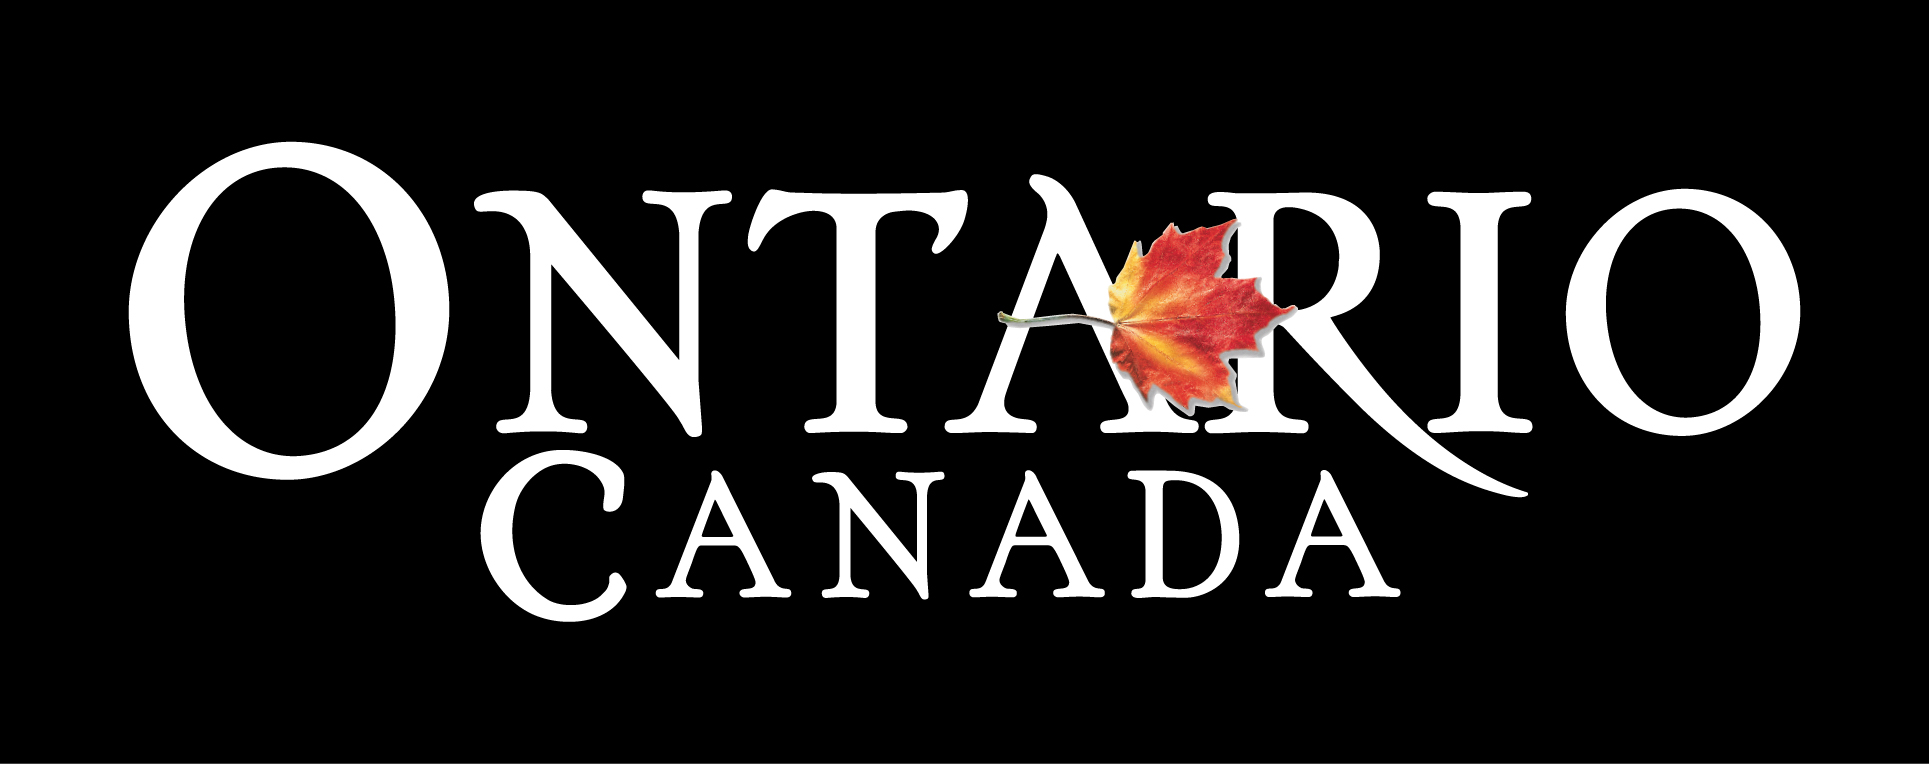 Ontario, Canada logo - four-colour reverse